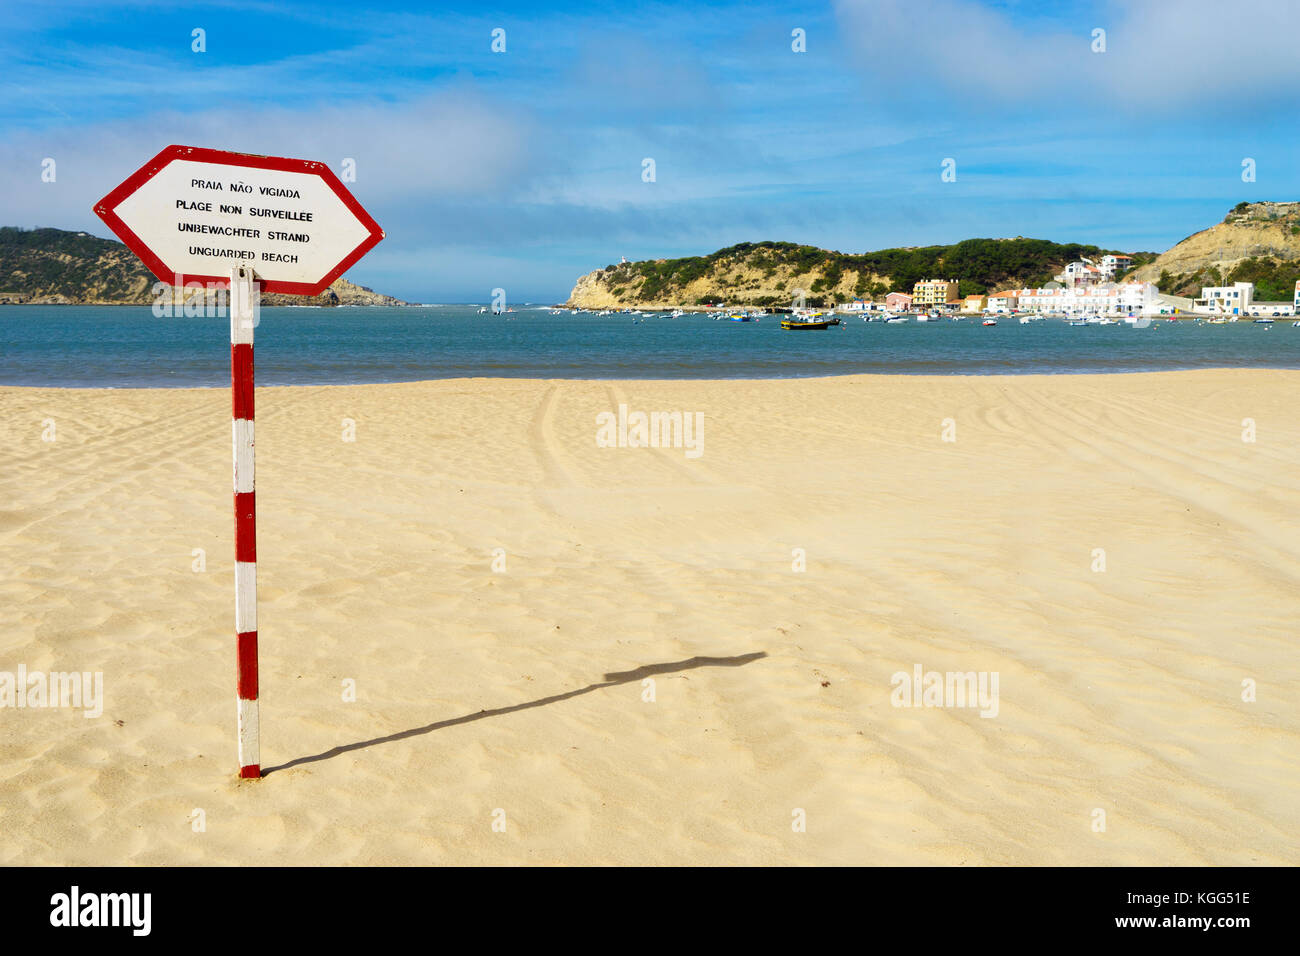 Plage non surveillée signer en quatre langues sur post rouge et blanc sur la plage de São Martinho do Porto, Côte d'Argent, Portugal, Octobre 2017 Banque D'Images